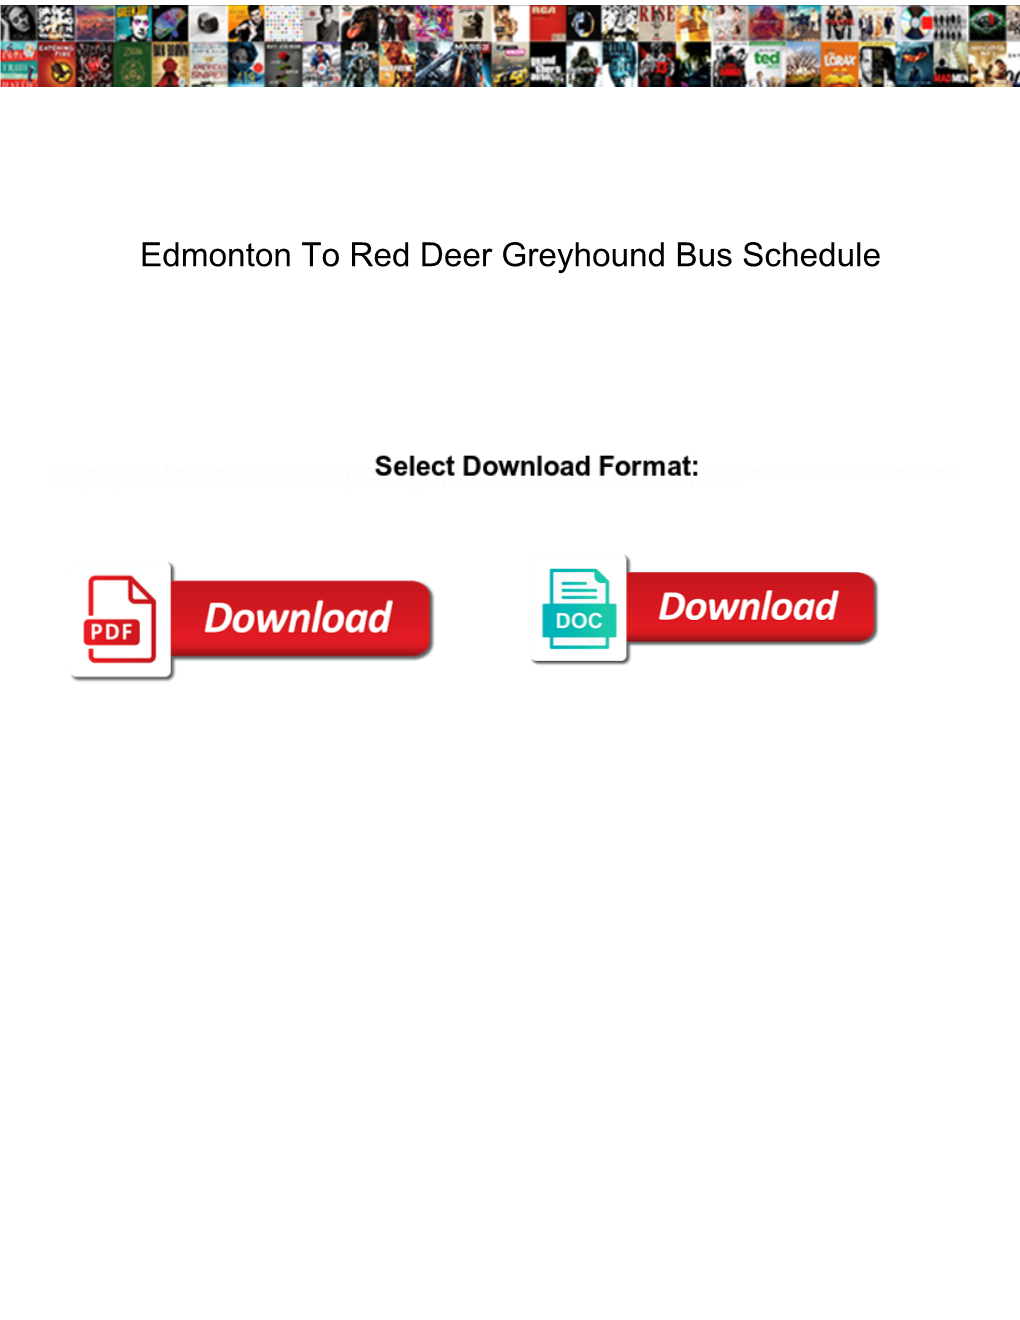 Edmonton to Red Deer Greyhound Bus Schedule